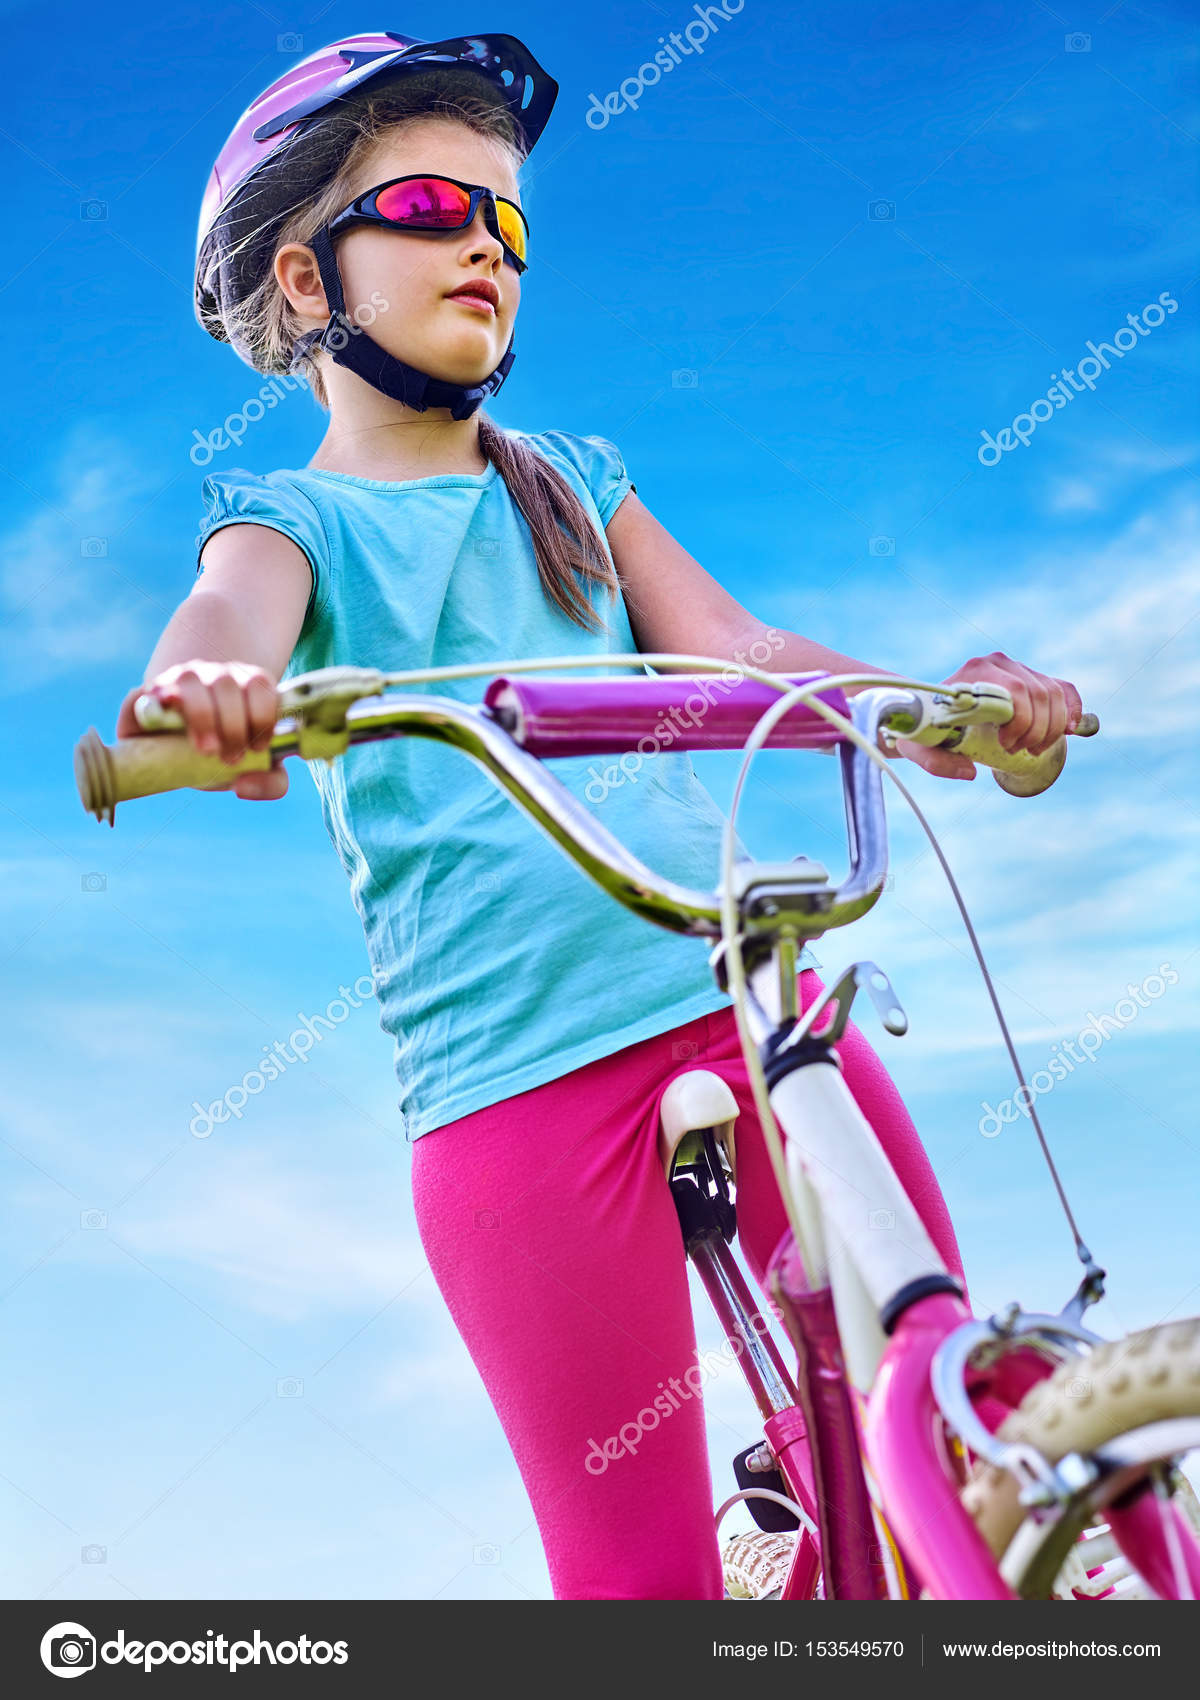 Niño viajando en bicicleta con gafas de arco iris y casco en el parque .:  fotografía de stock © poznyakov #153549570